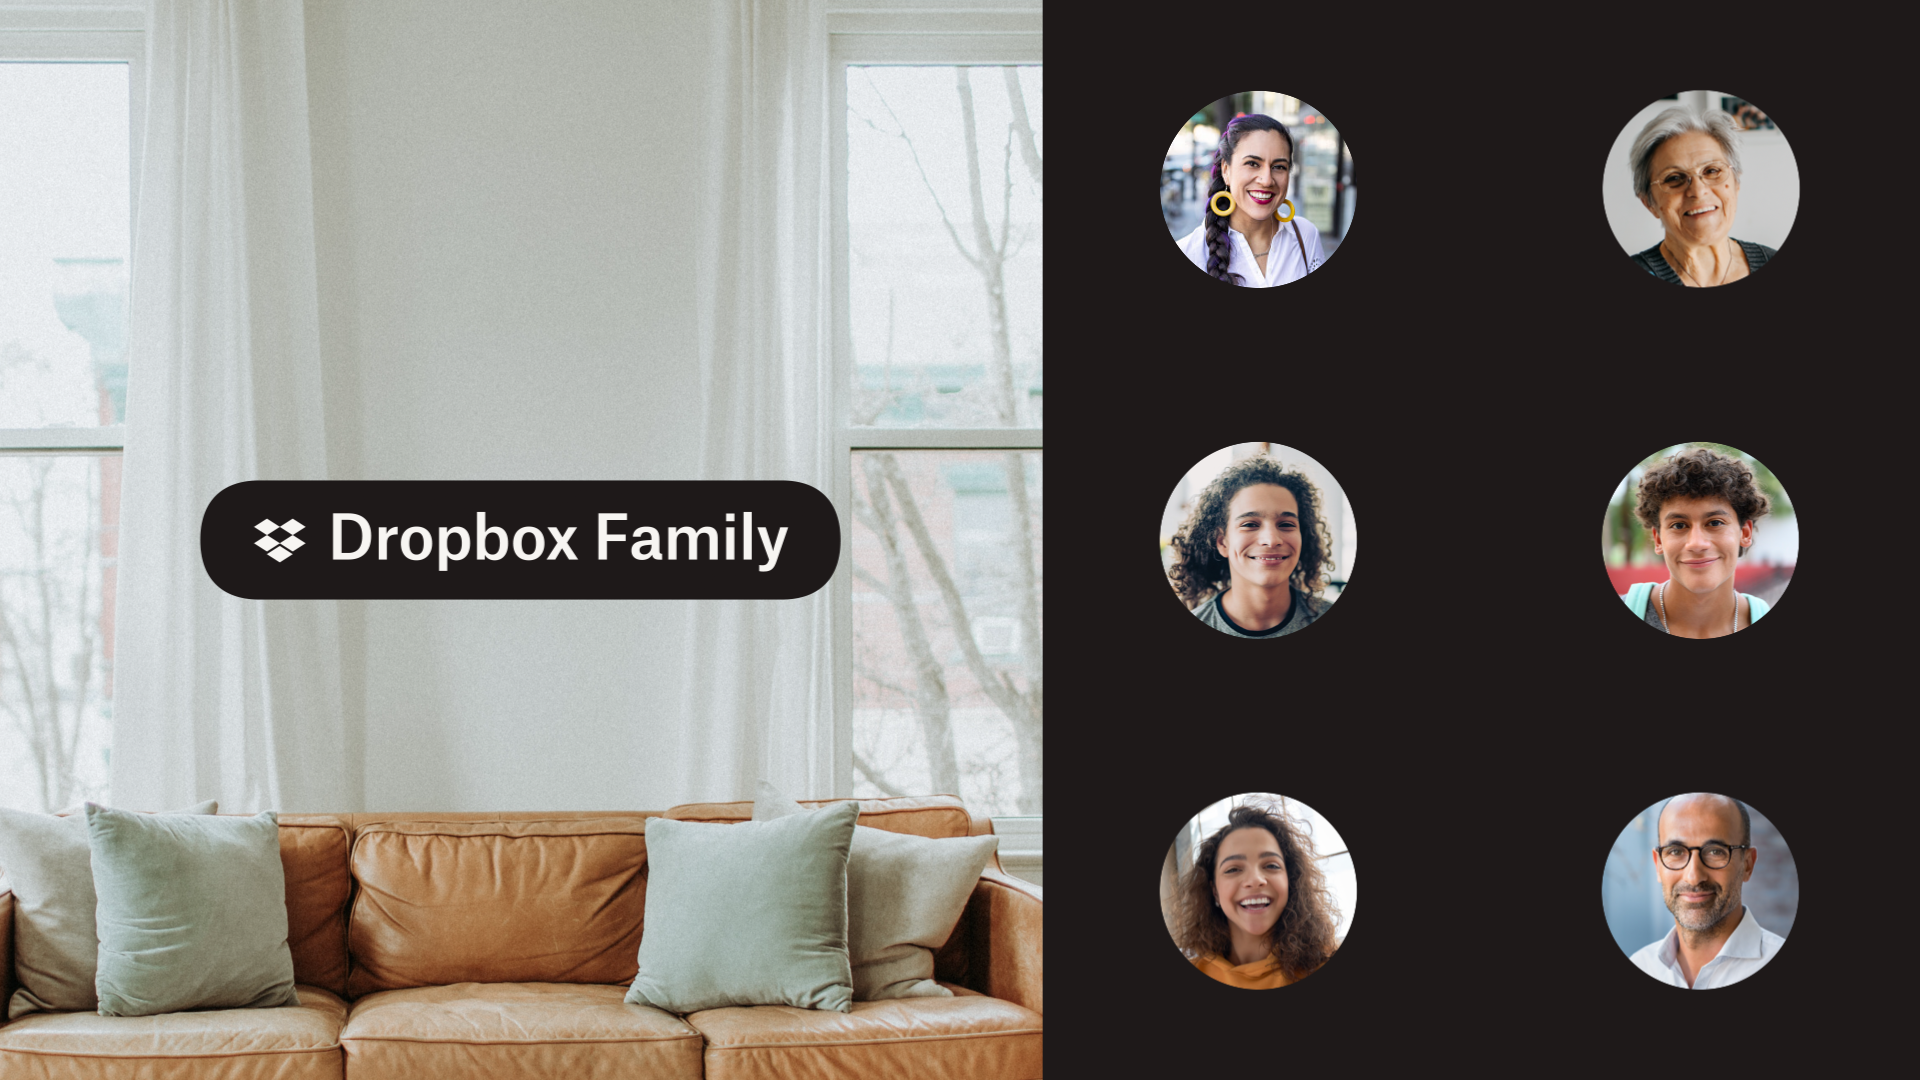 Una imagen compuesta de un sofá de sala de estar y fotos en primer plano de una familia